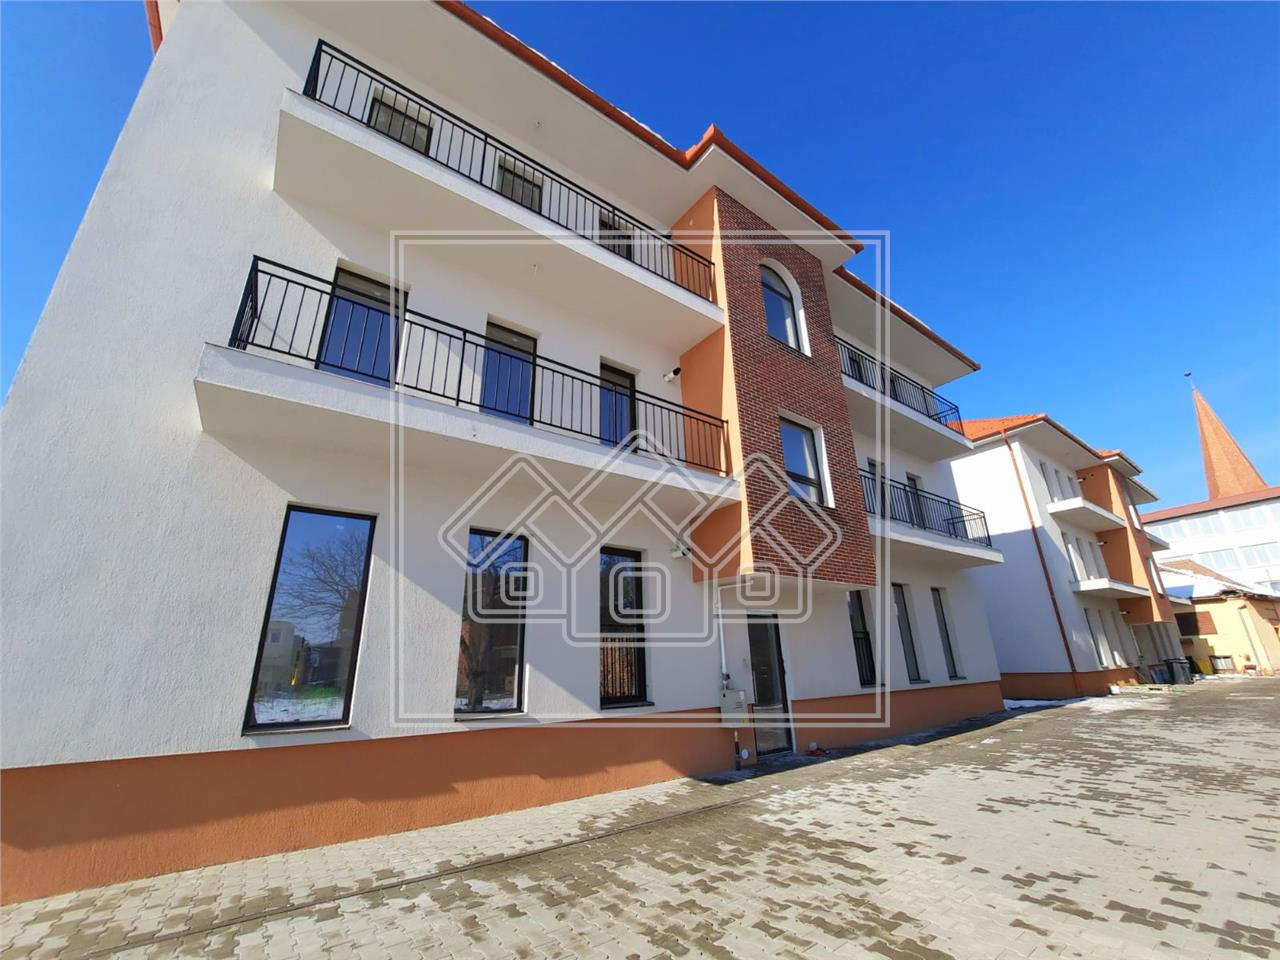 Apartament de vanzare in Sibiu - 2 camere si balcon - etaj 1